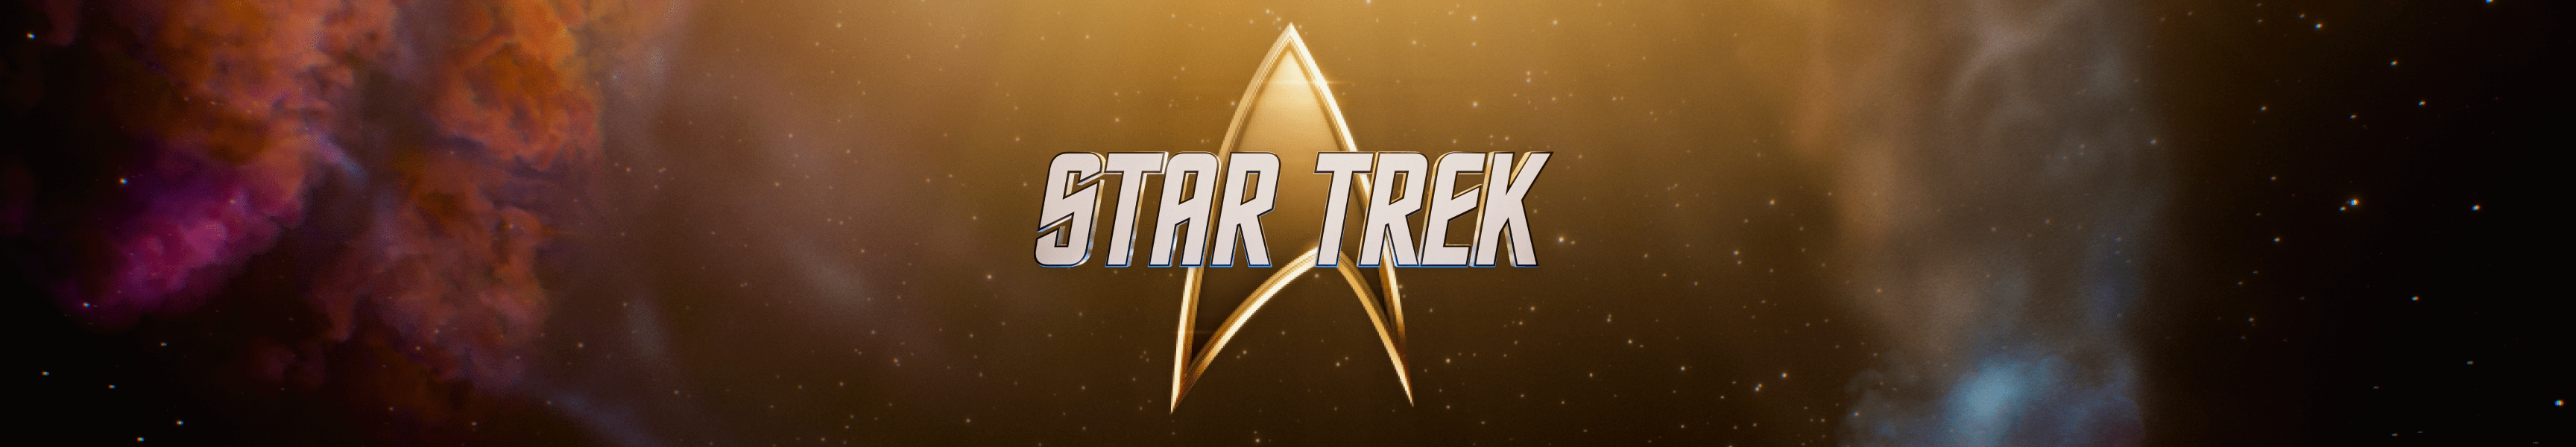 Star Trek 55th Anniversary